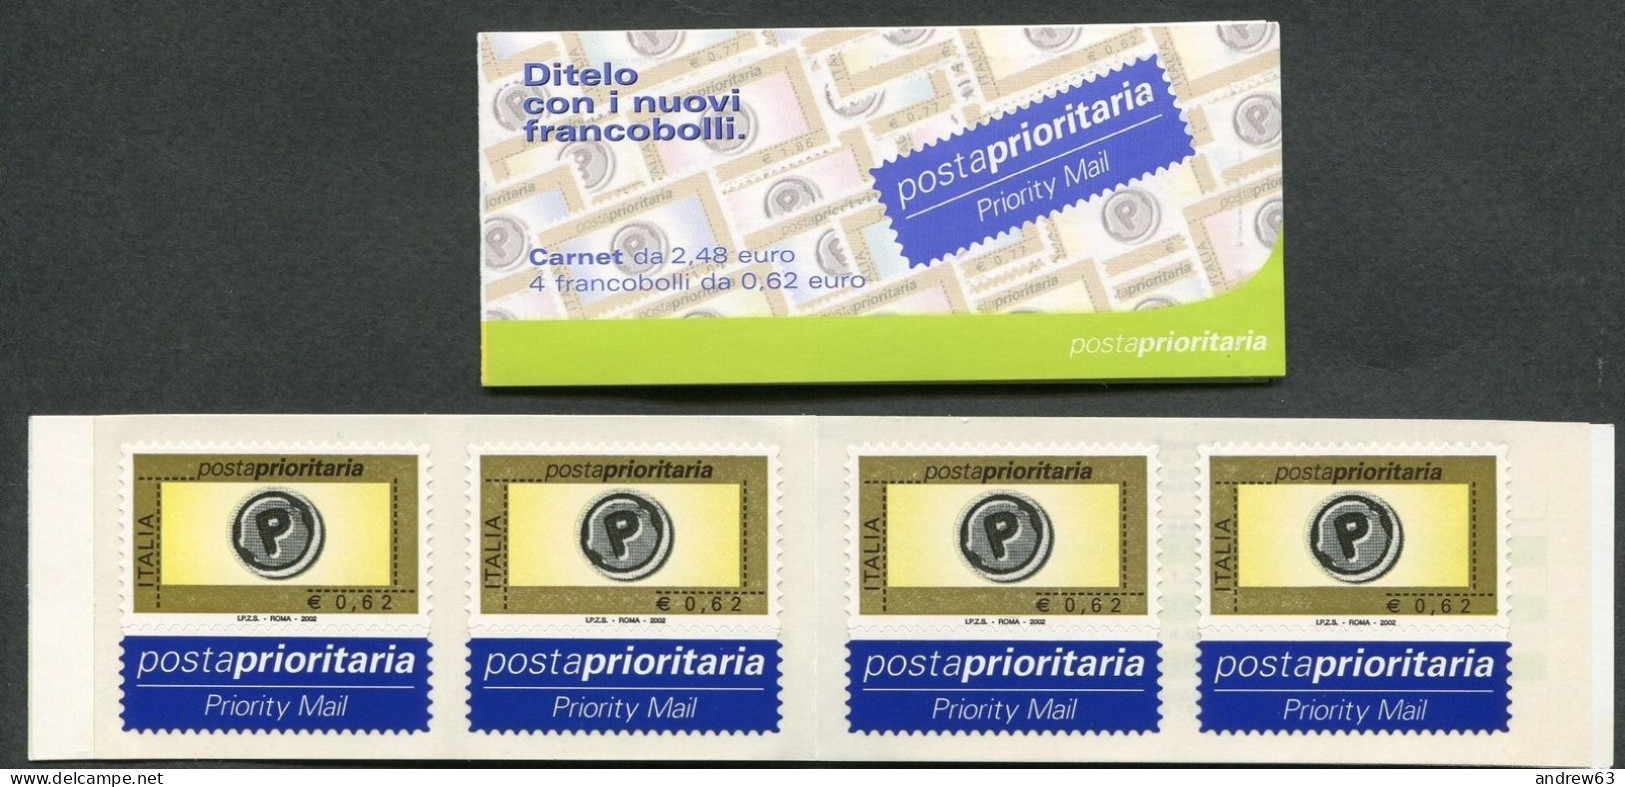 ITALIA - 2002 - Libretto Posta Prioritaria Carnet Da 4 Francobolli Di € 0,62 Integri - Nuovo - Booklets